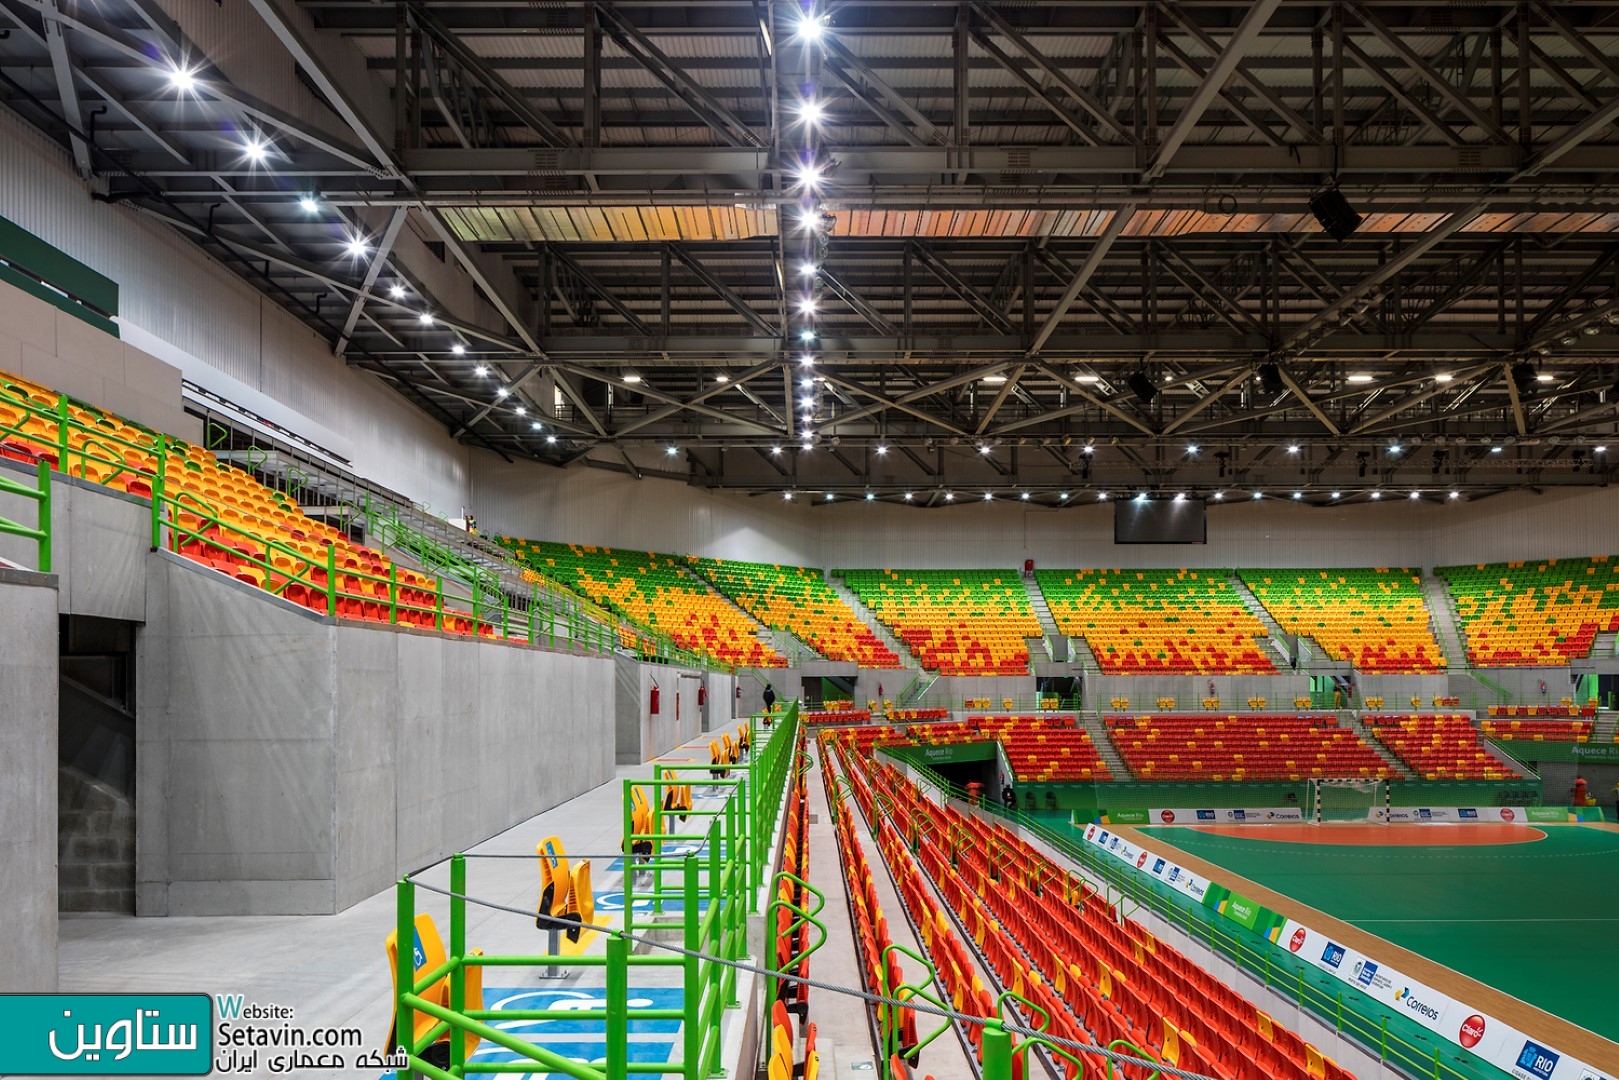 ورزشگاه هندبال بازی های المپیک ریو 2016 , Oficina de Arquitetos , LSFG Arquitetos Associados , برزیل , استادیوم , ریو 2016 , المپیک , المپیک 2016 , هندبال